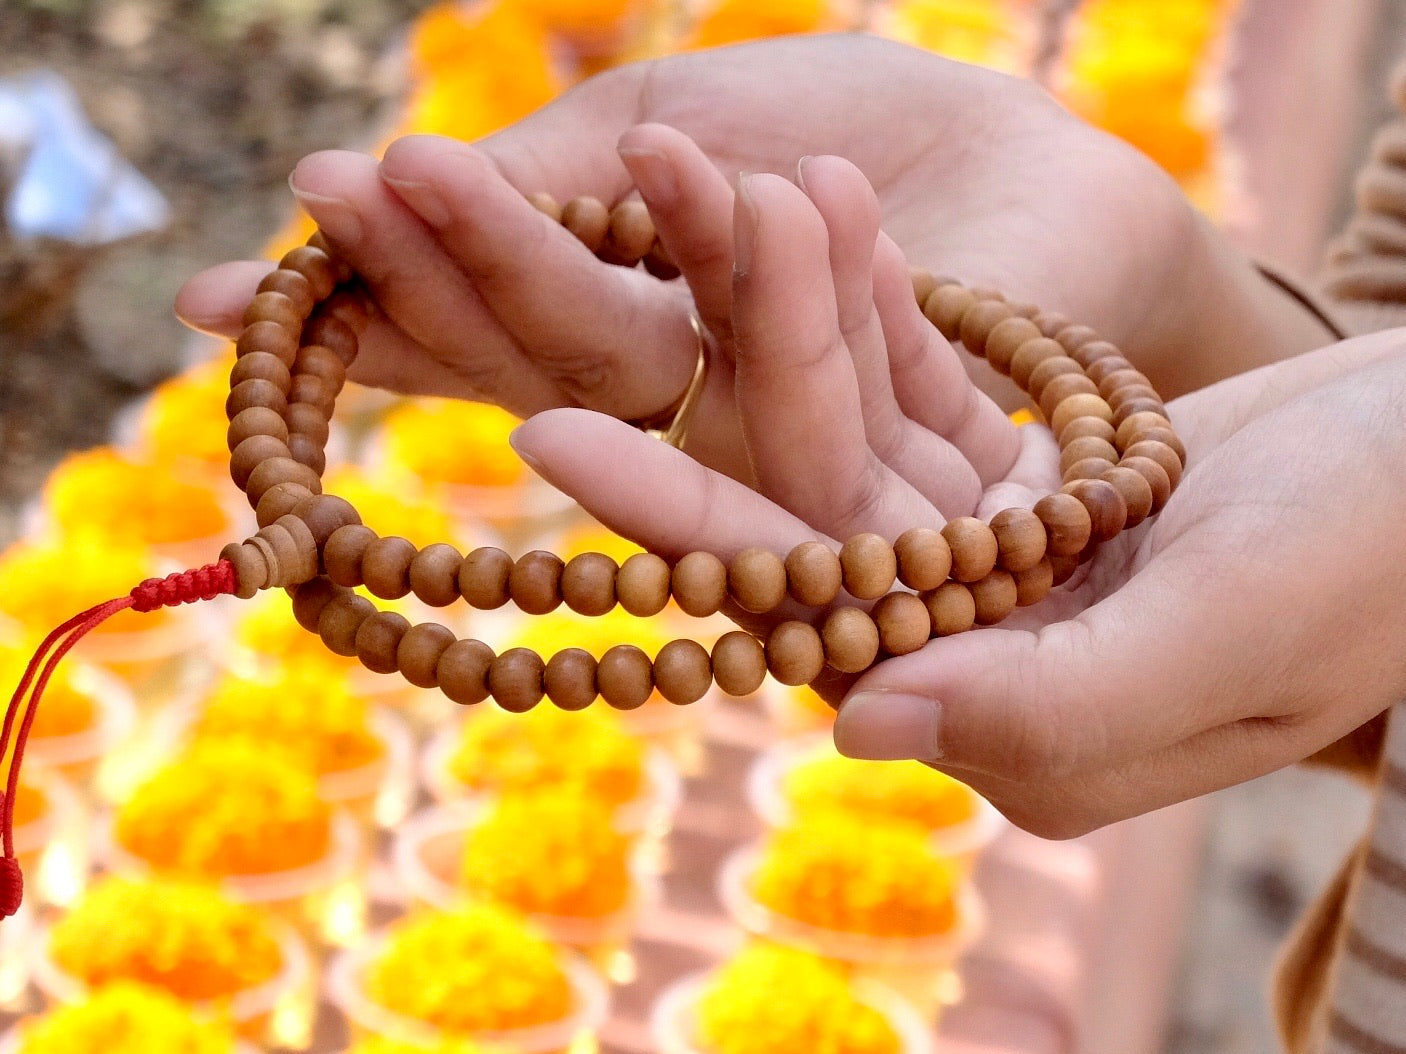 sandalwood mala beads on hand